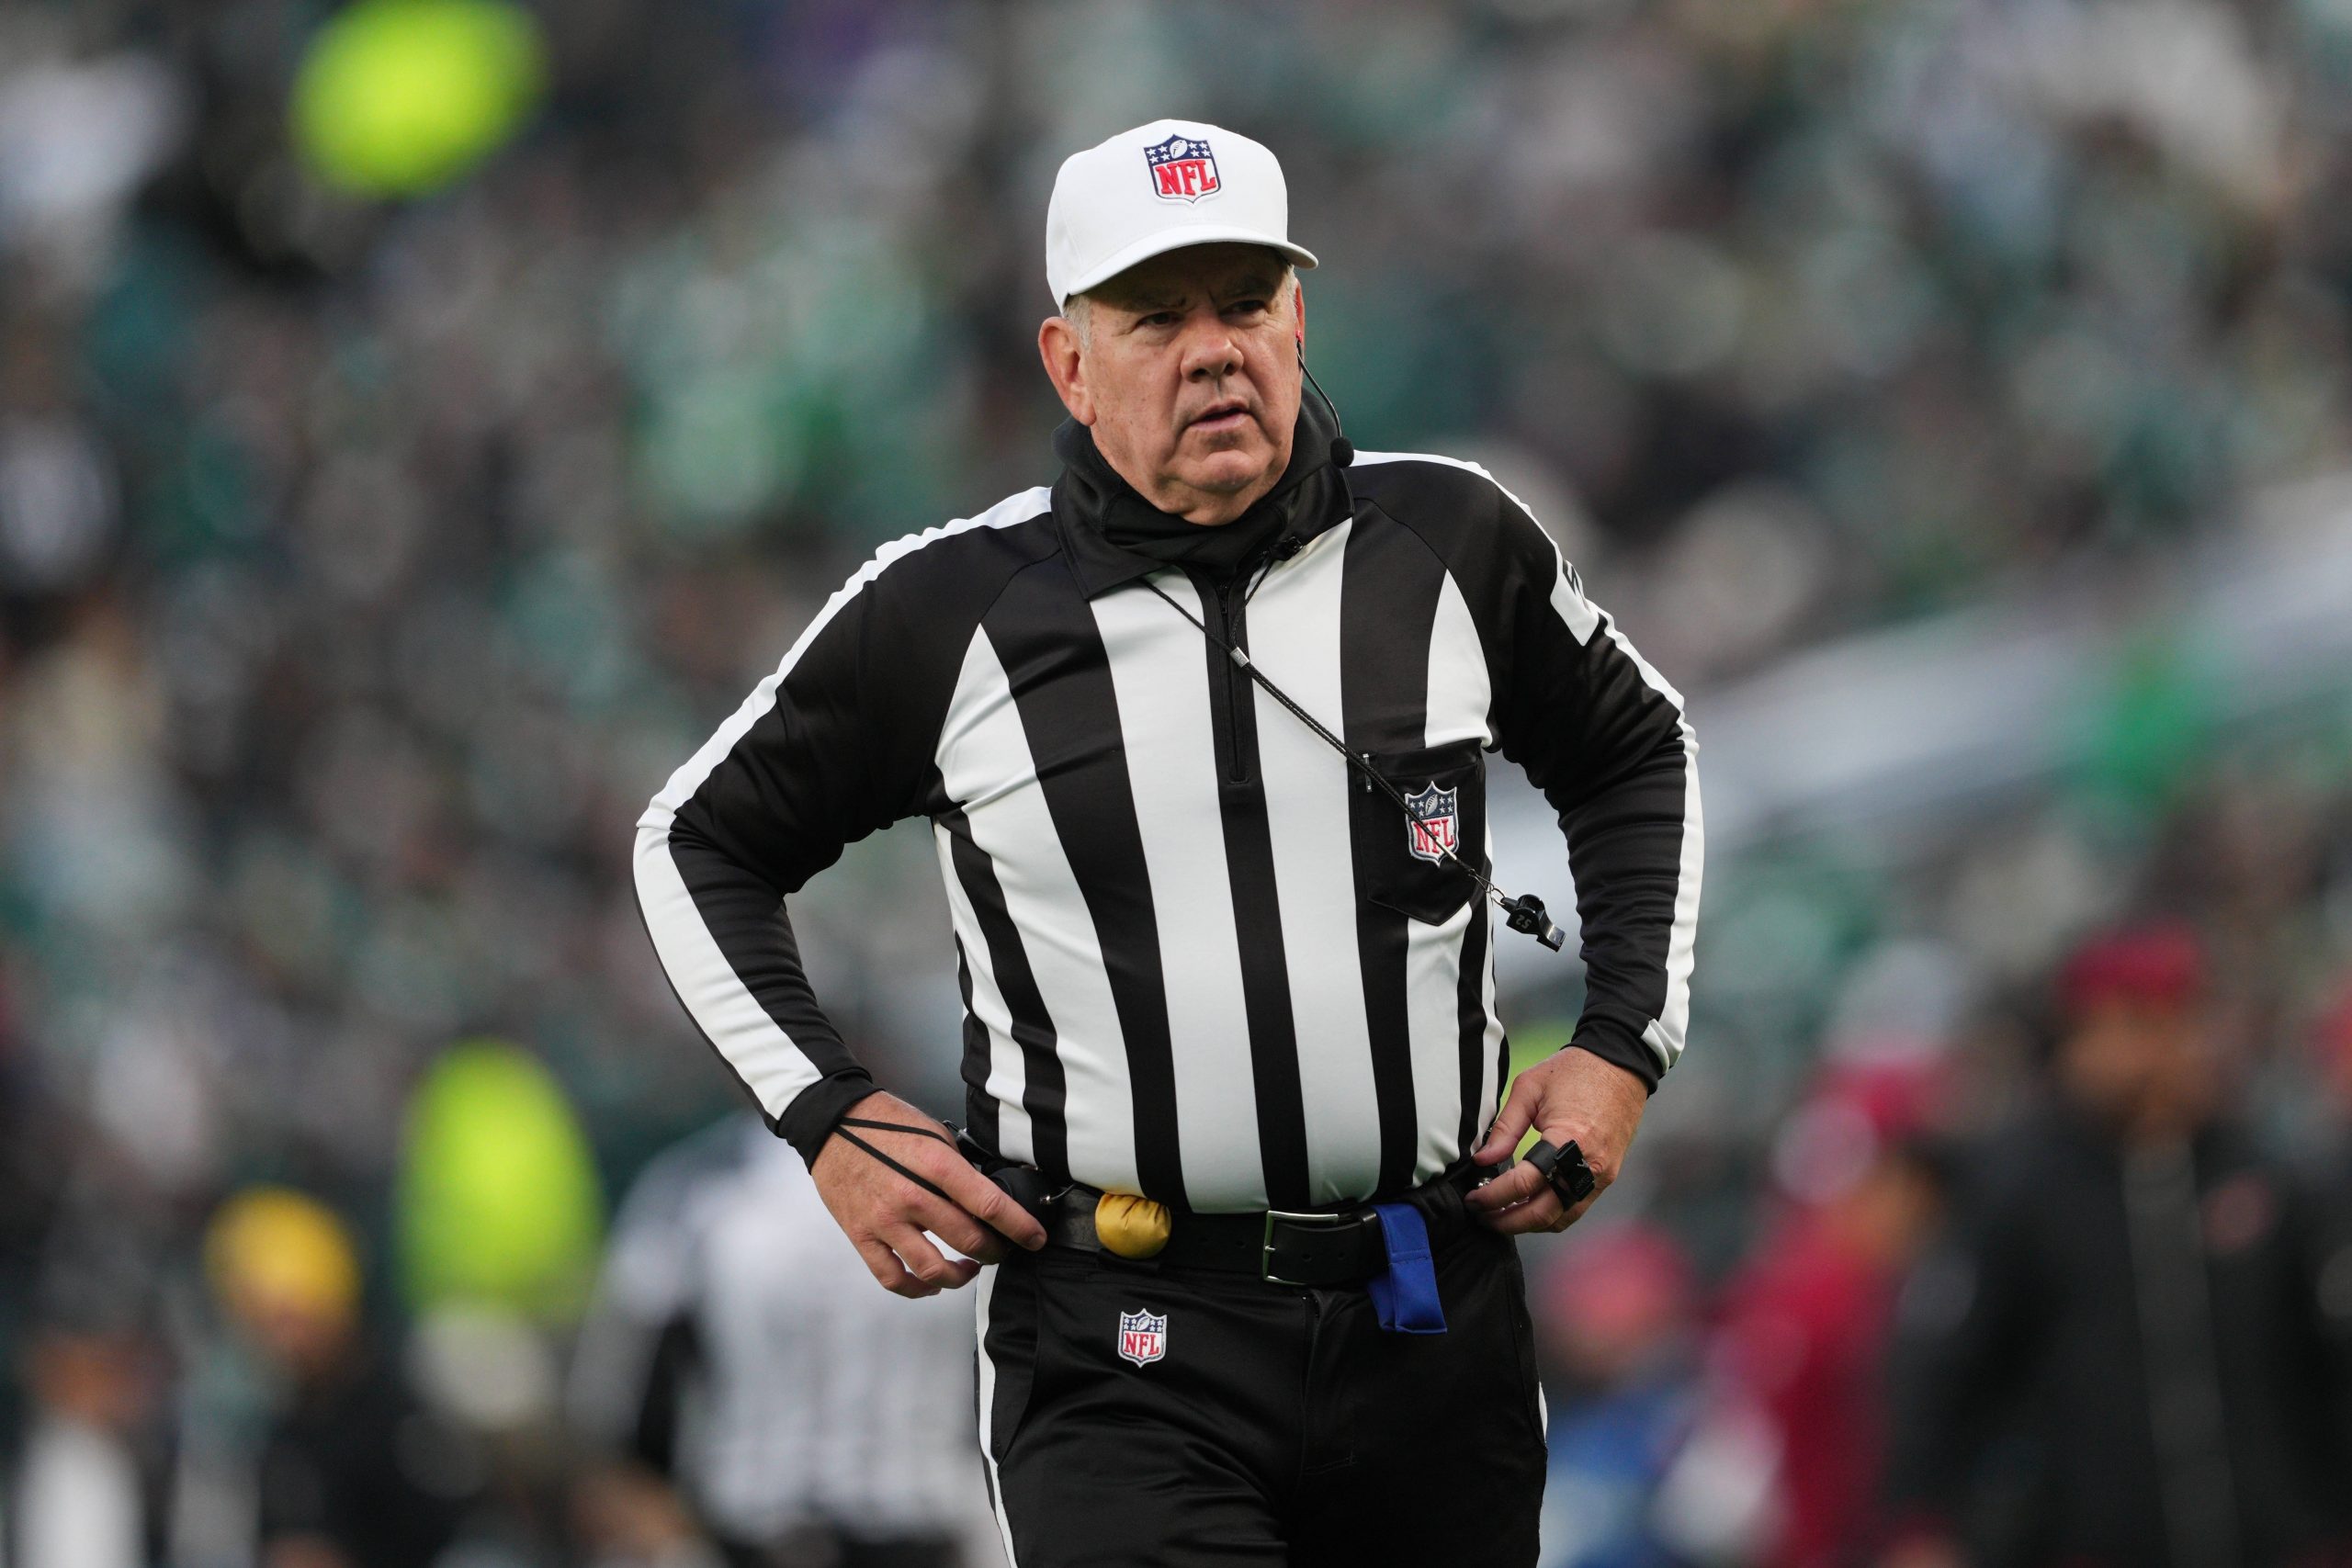 FootballR - NFL - Während des Super Bowl steht ein NFL-Schiedsrichter, Bill Vinovich, der als Schiedsrichter bezeichnet wird, auf dem Spielfeld.